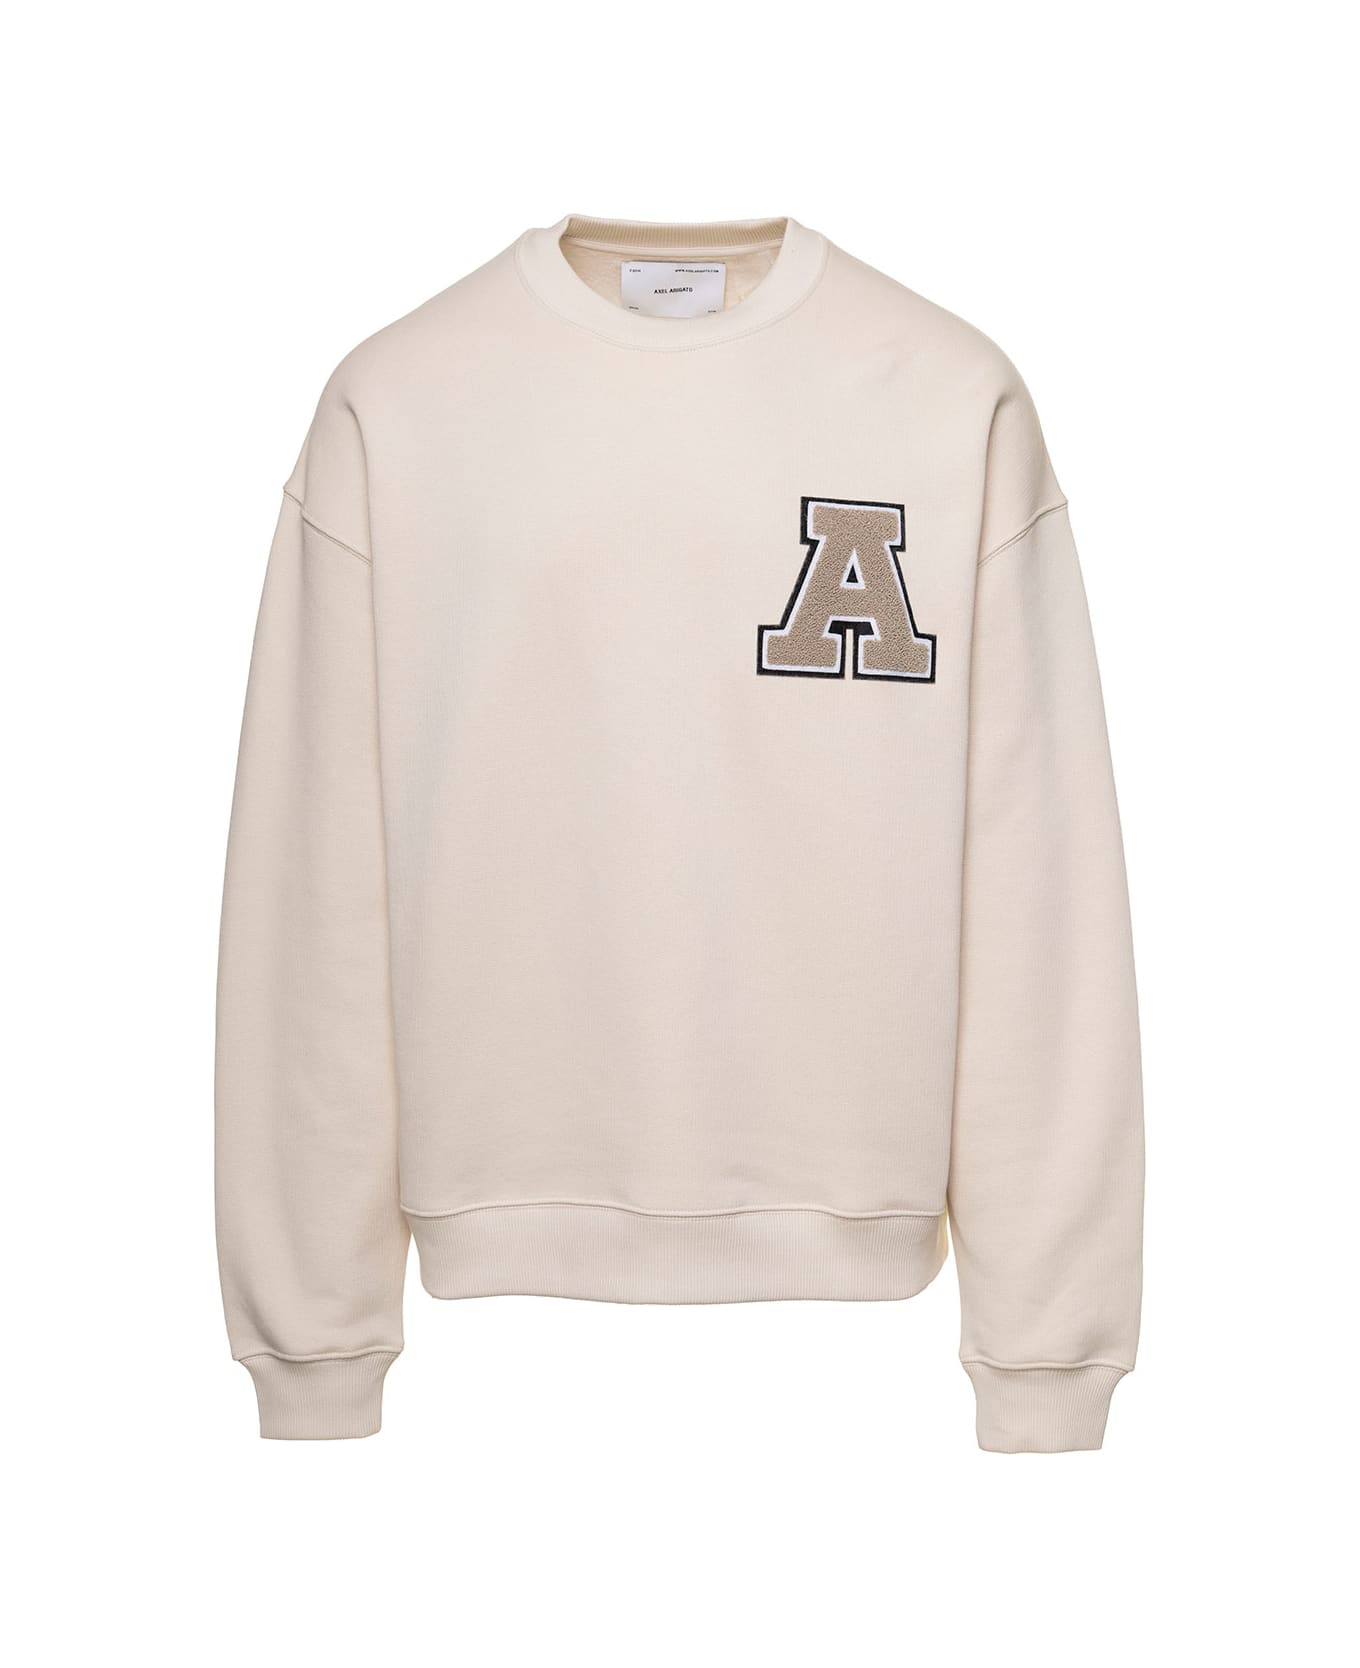 Axel Arigato 'team' Beige Sweatshirt With Front Logo Patch In Cotton Man - Beige